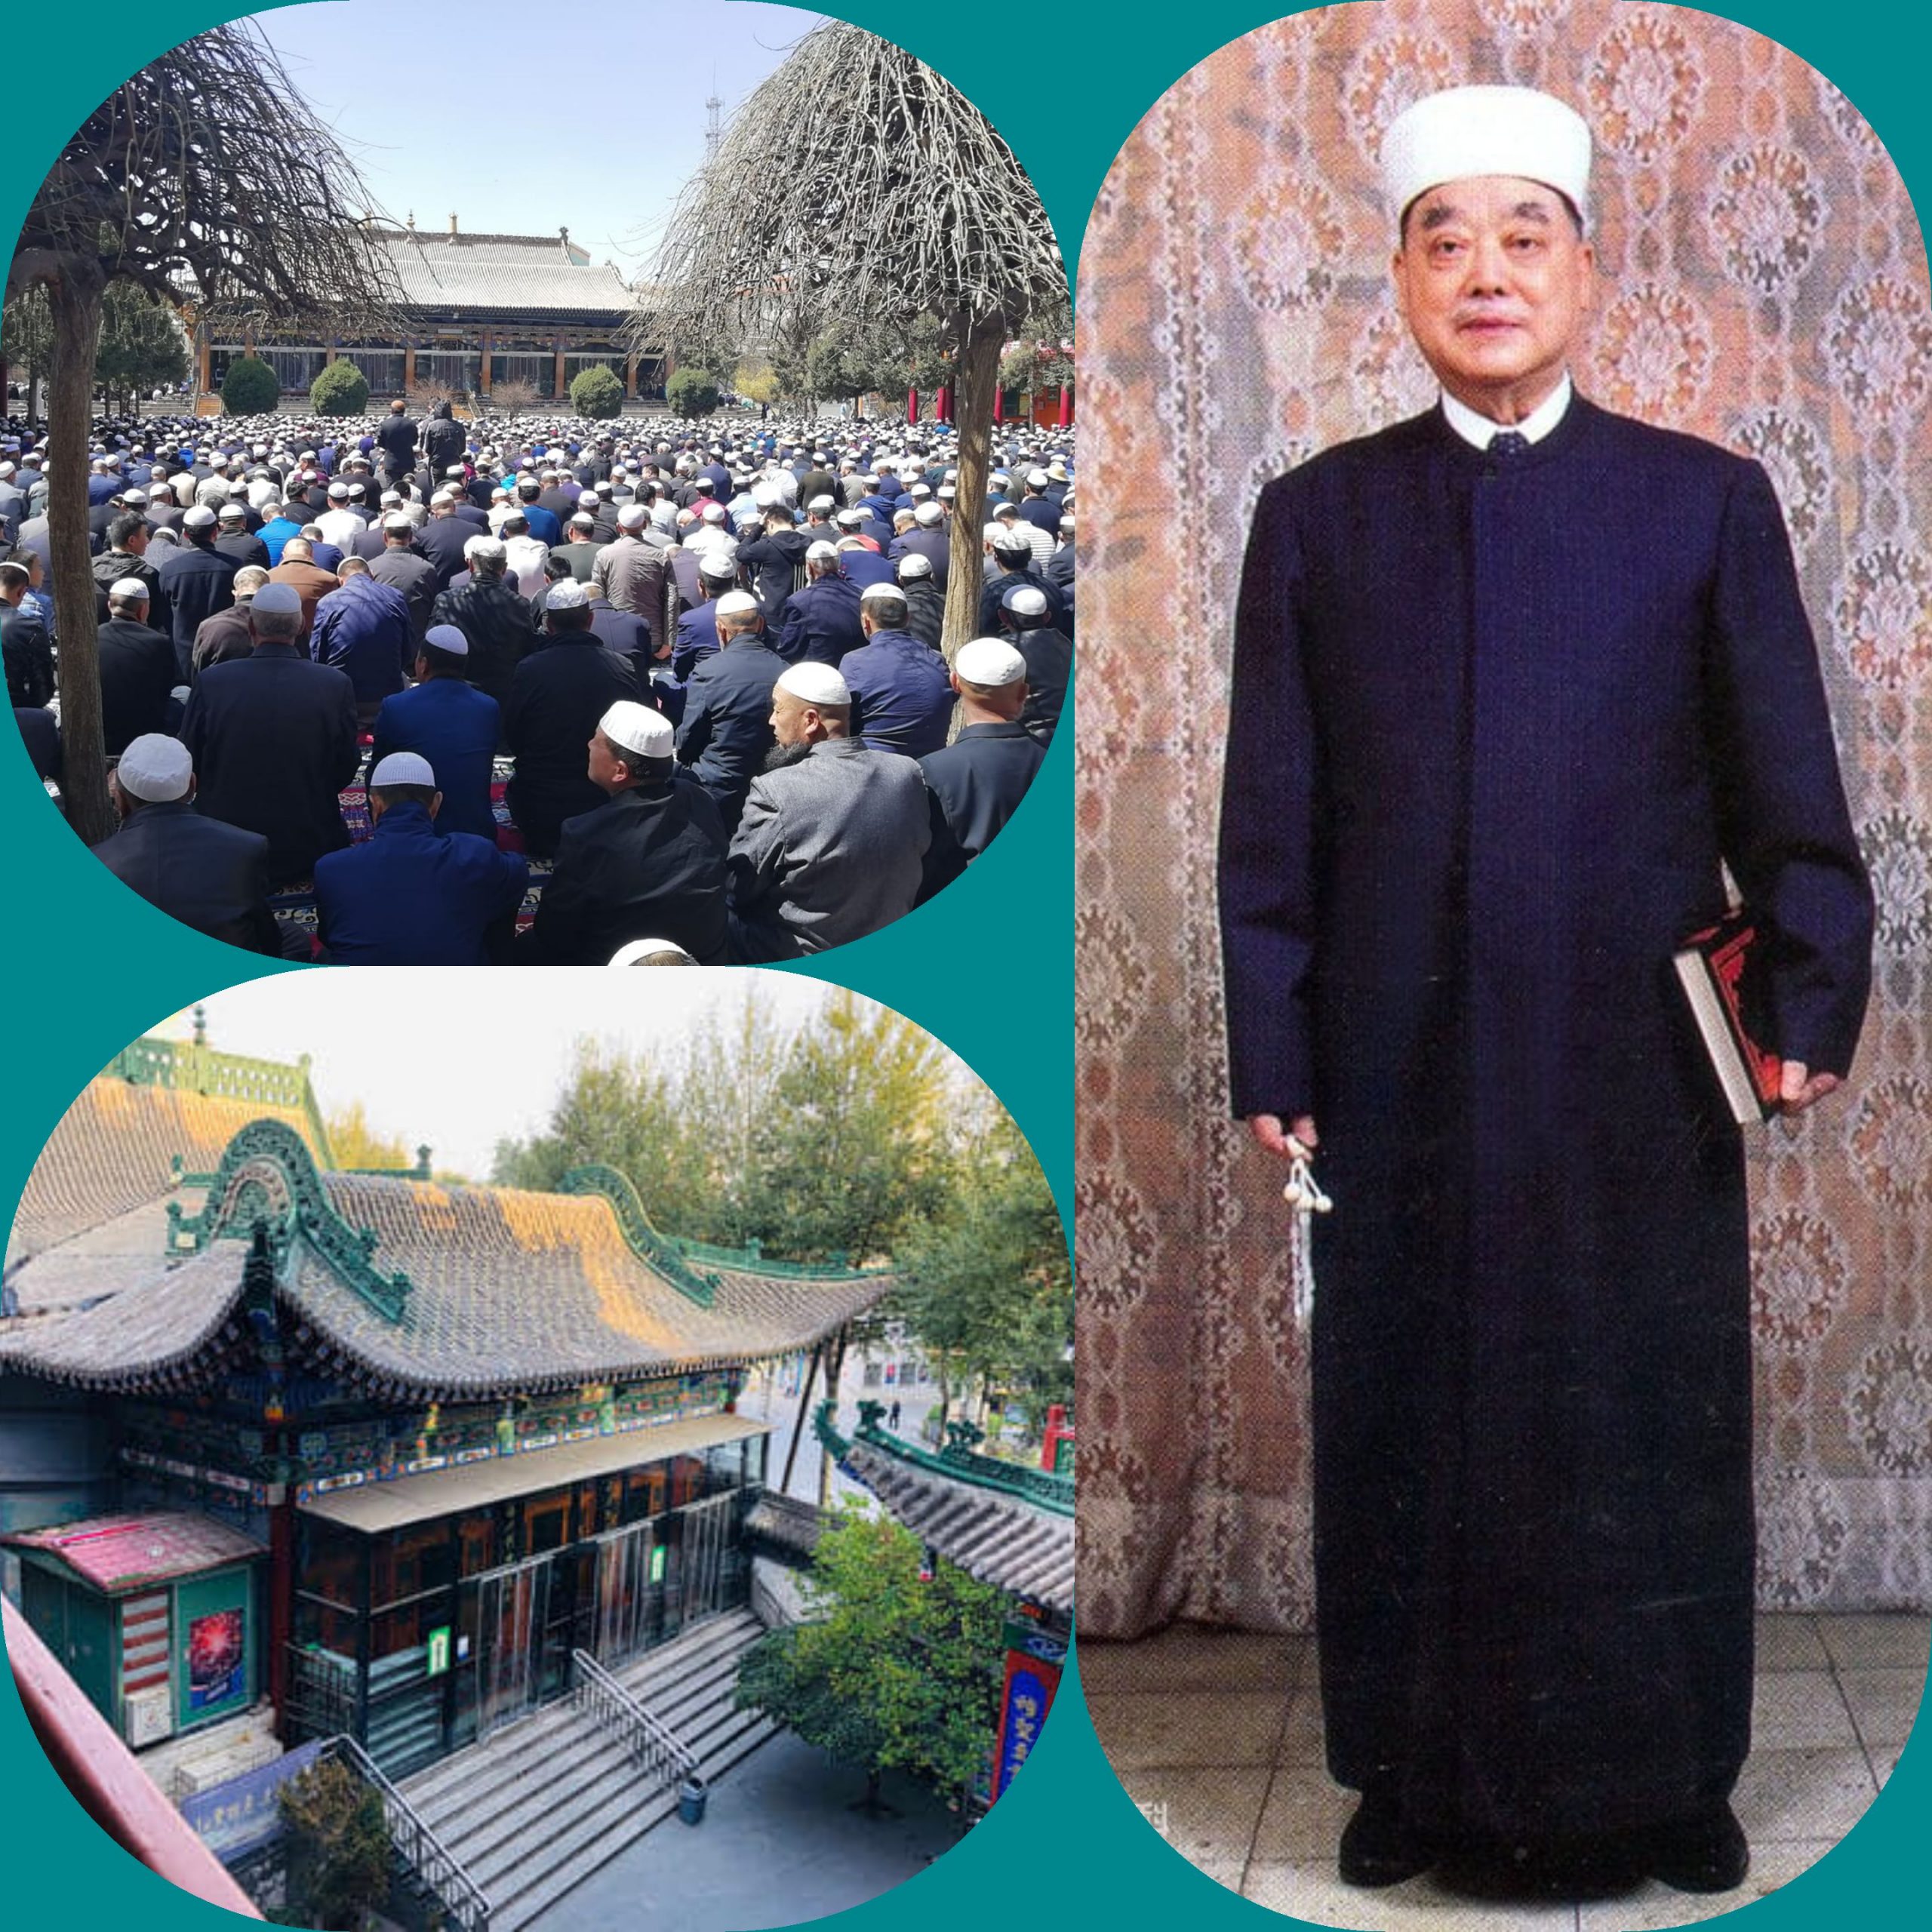 الإمام أيوب "دينغ تشونغ مينغ" الدبلوماسي والأكاديمي وعالم الدين الإسلامي الشهير